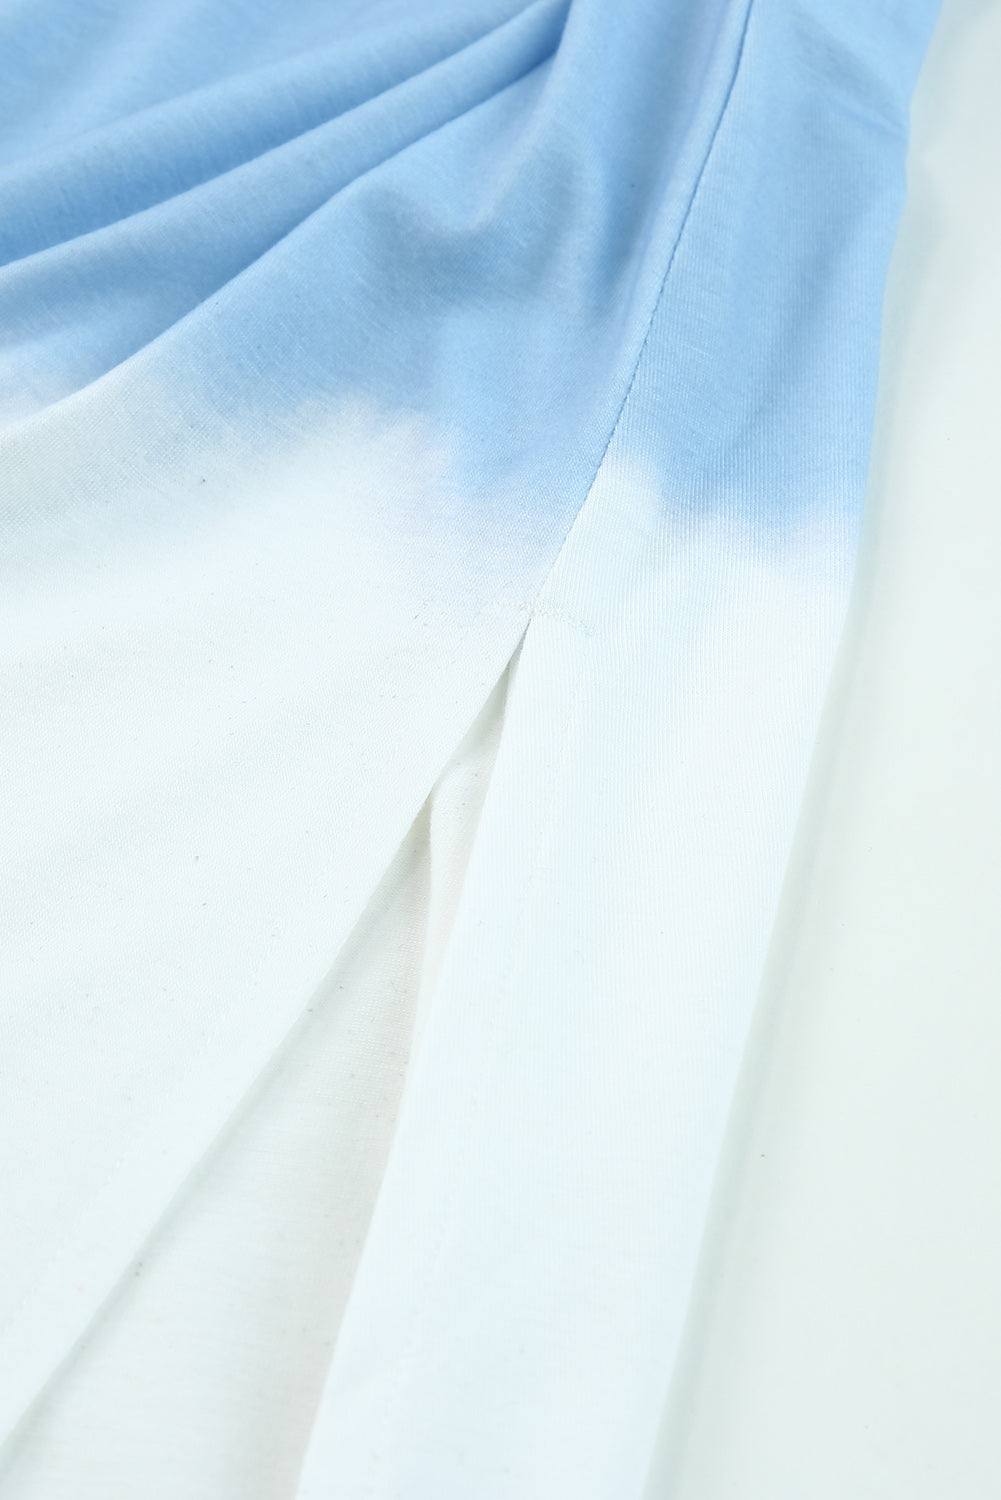 Robe longue fendue bleu ciel à bretelles spaghetti et teinture par nouage